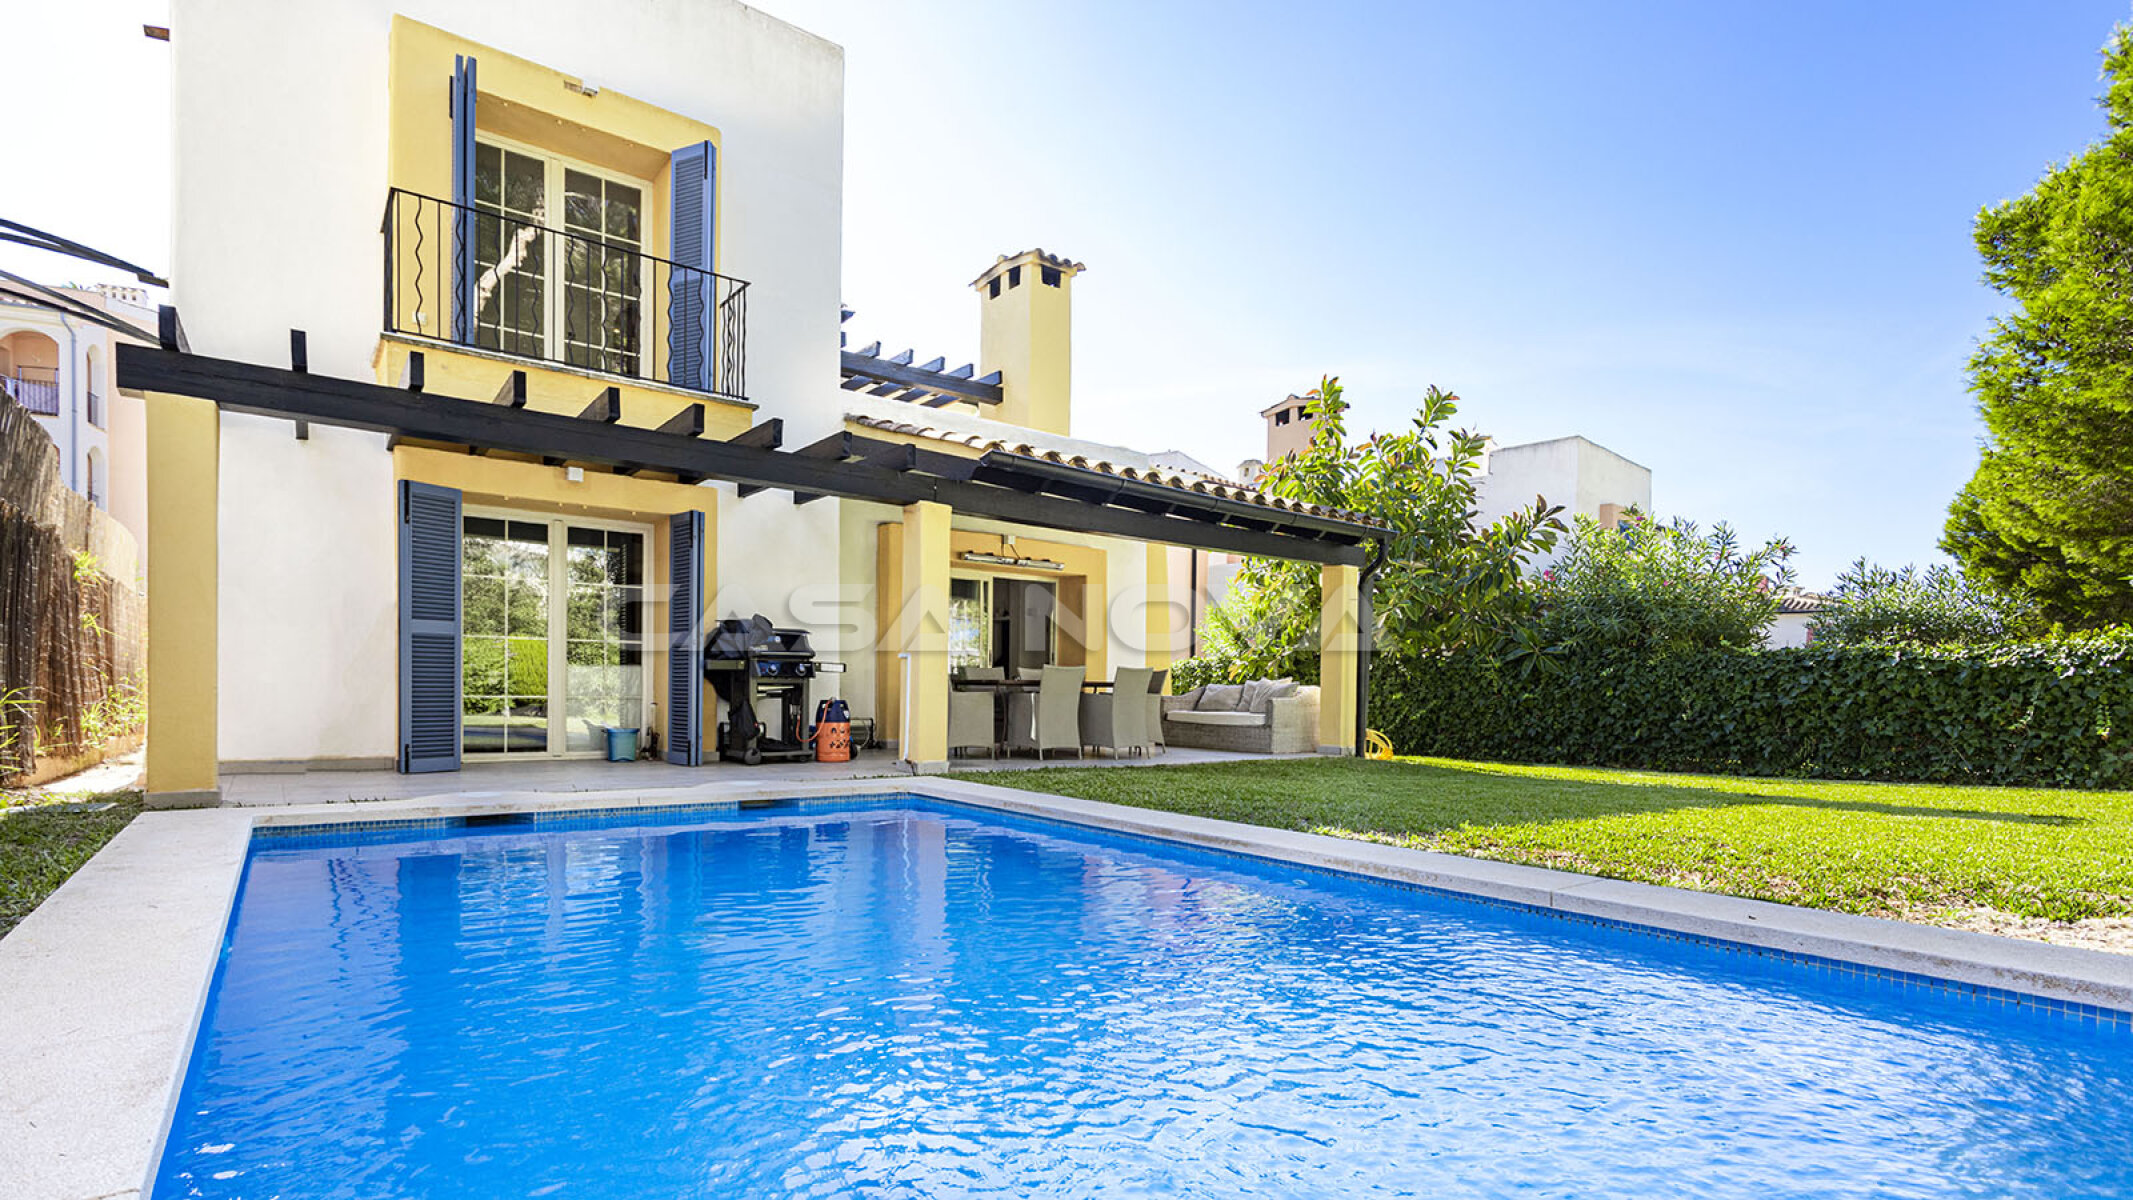 Great Mallorca villa in an exclusive complex